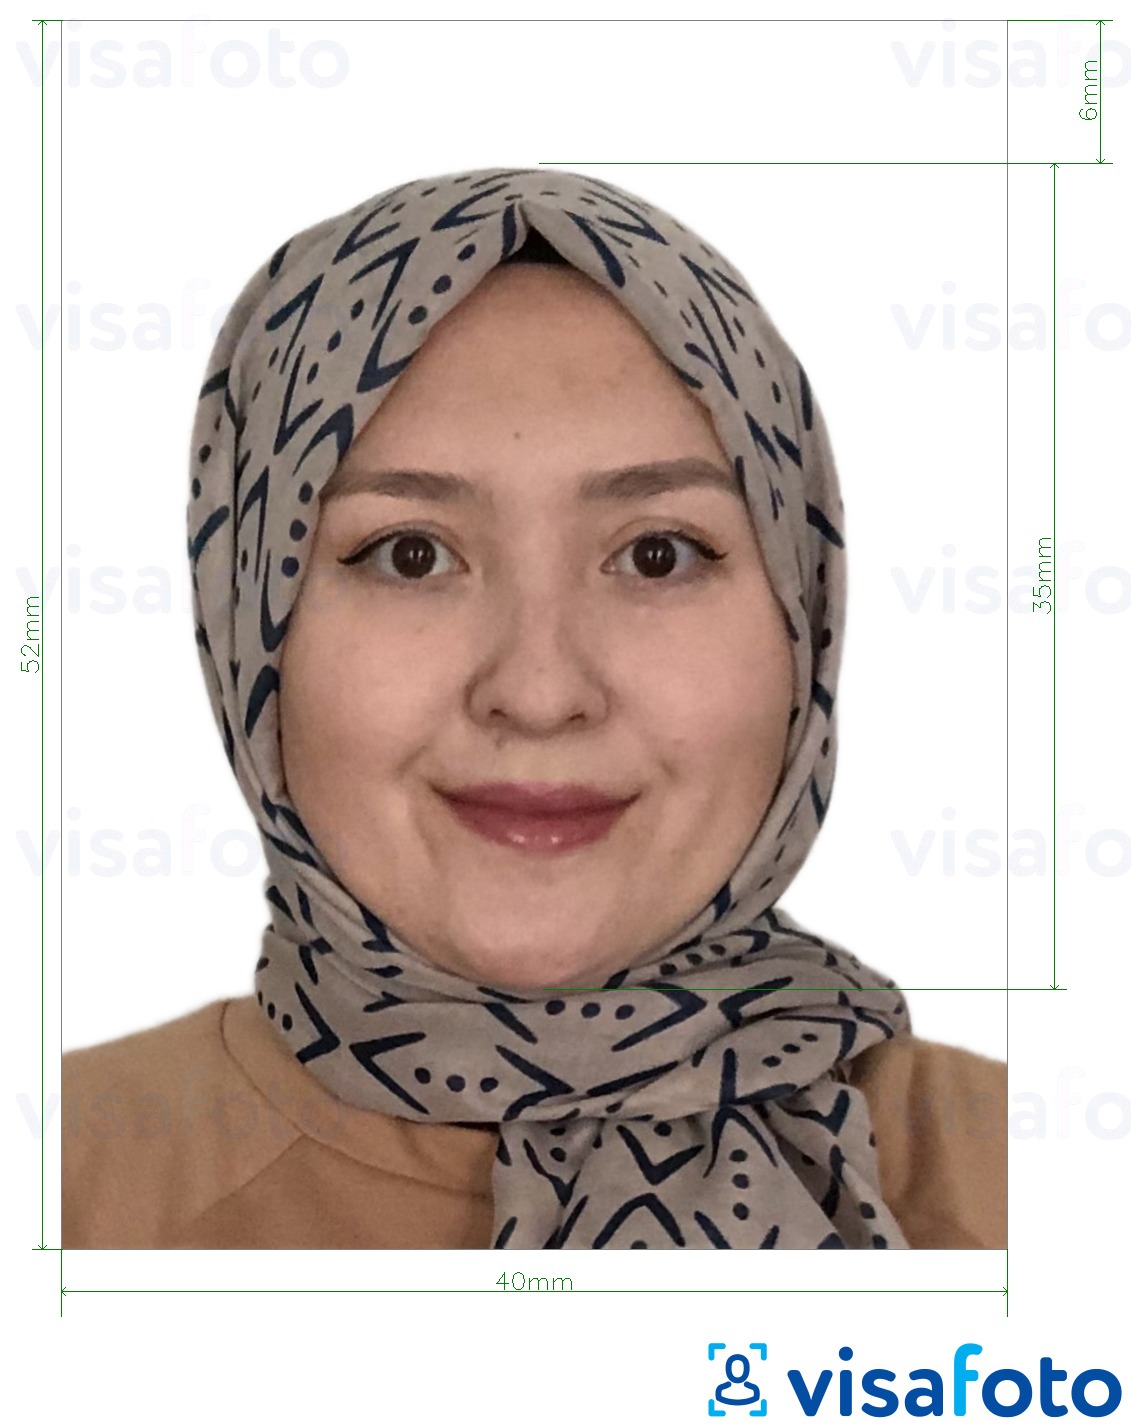 Пример за снимка за Брунейски паспорт 5.2x4 см (52x40 мм) с точна спецификация за размер